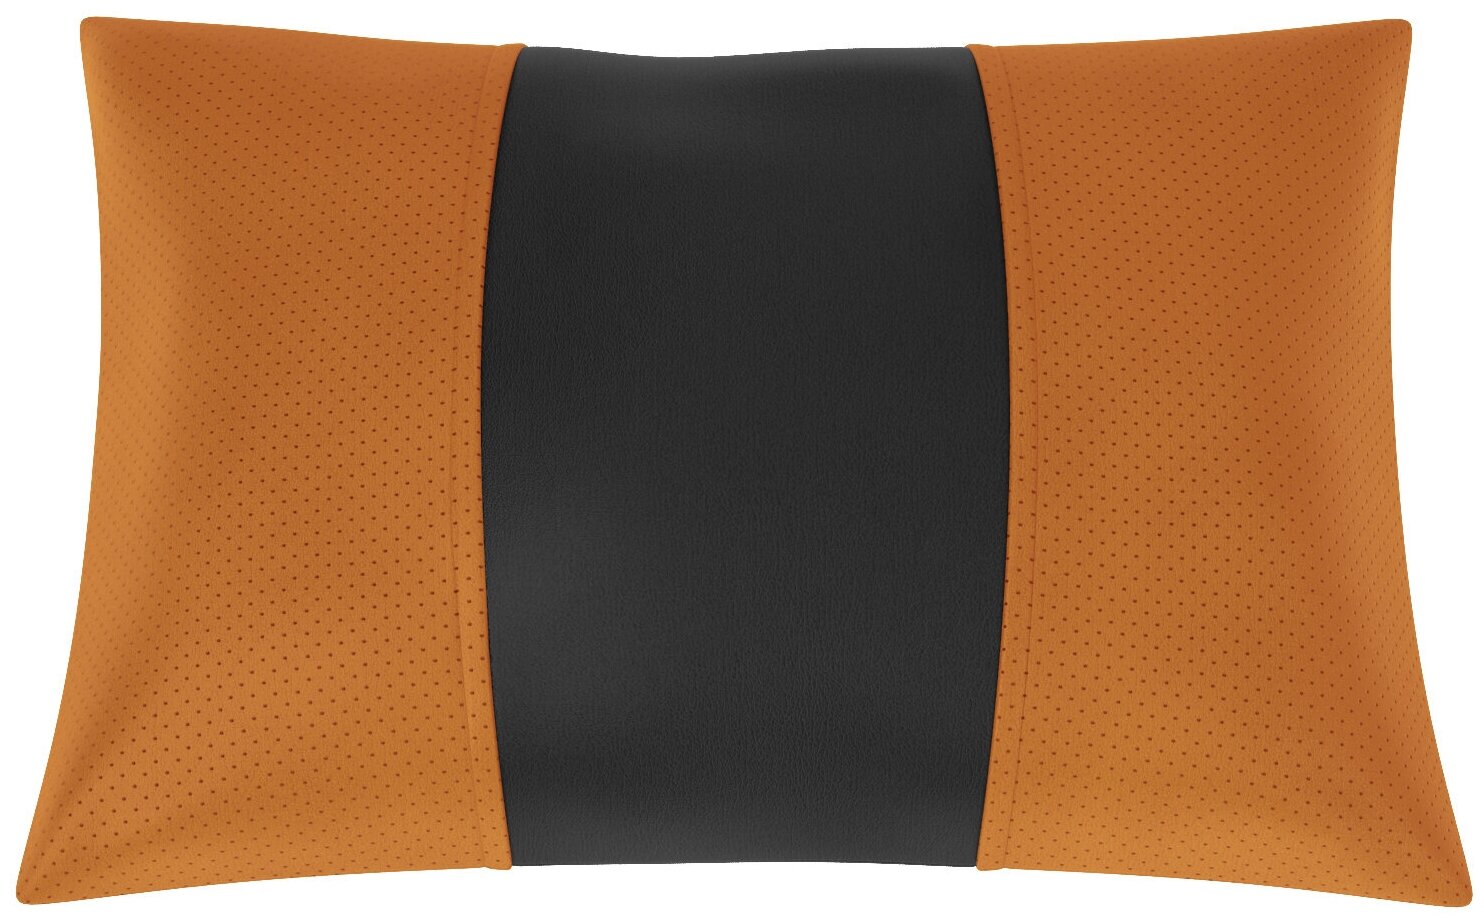 Автомобильная подушка для Citroen C5 2 (Ситроен С5 2). Экокожа. Середина: чёрная гладкая экокожа. Боковины: оранжевая экокожа с перфорацией. 1 шт.